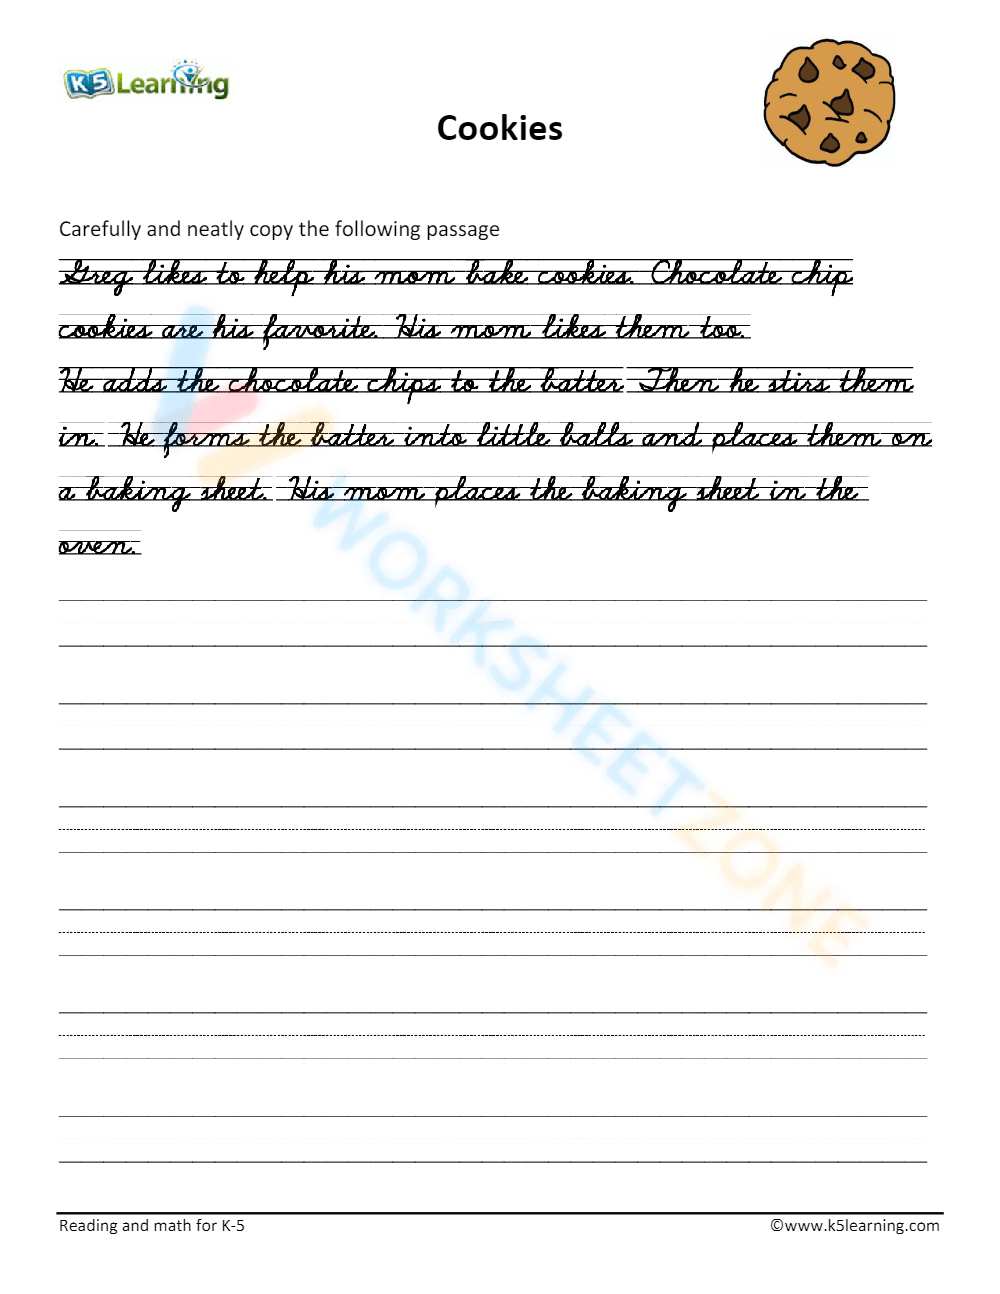 Paragraph handwriting practice worksheet - Cookie